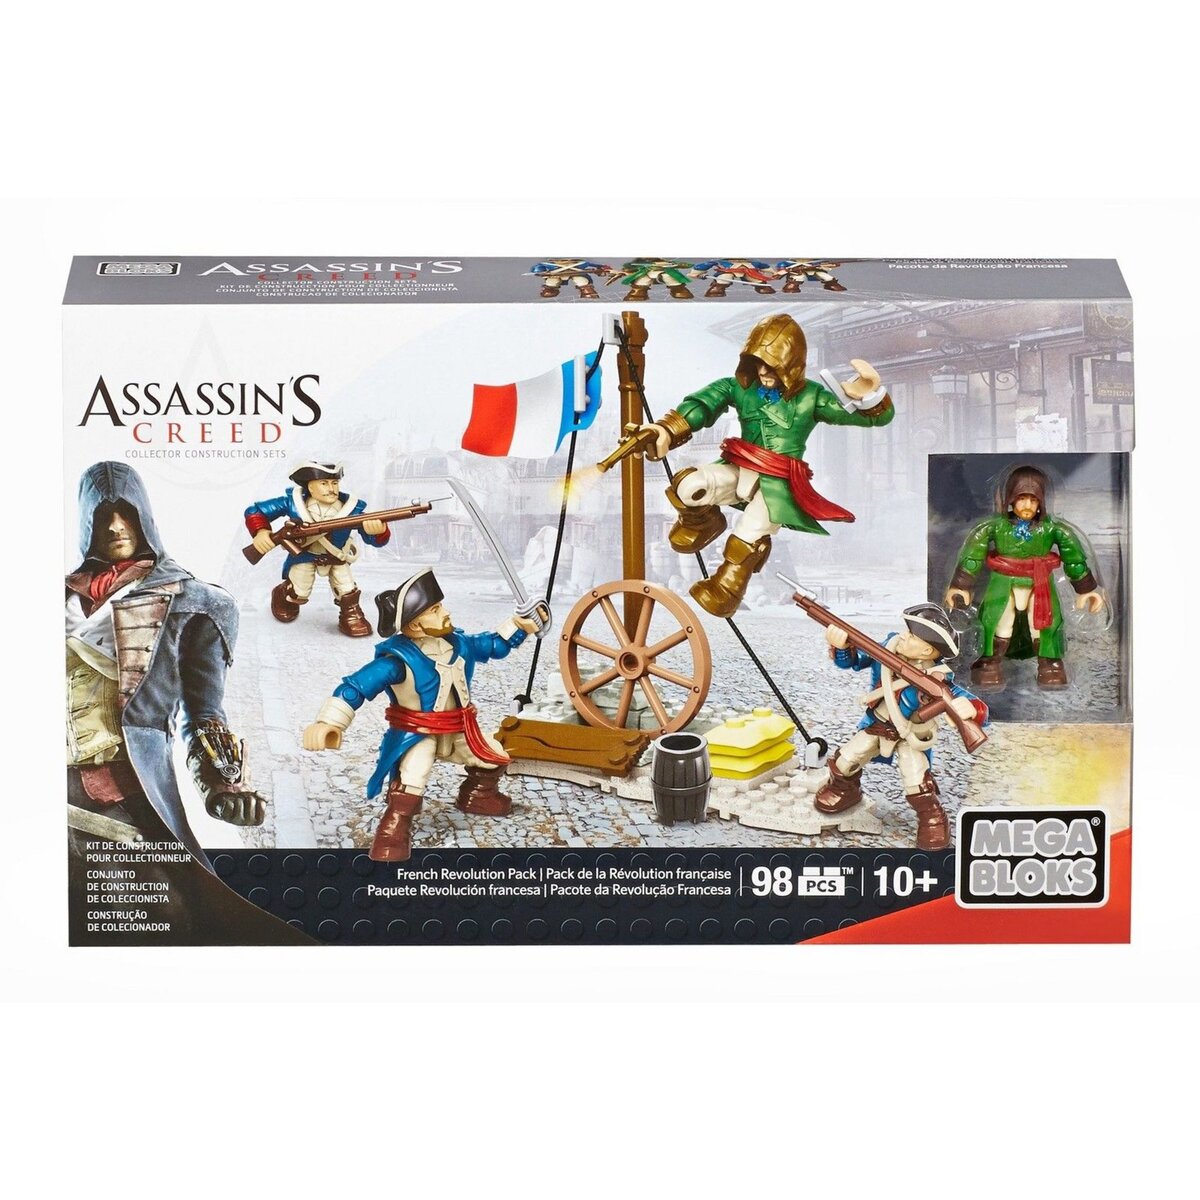 MEGABLOKS Assassin's Creed Pack de la Révolution Française